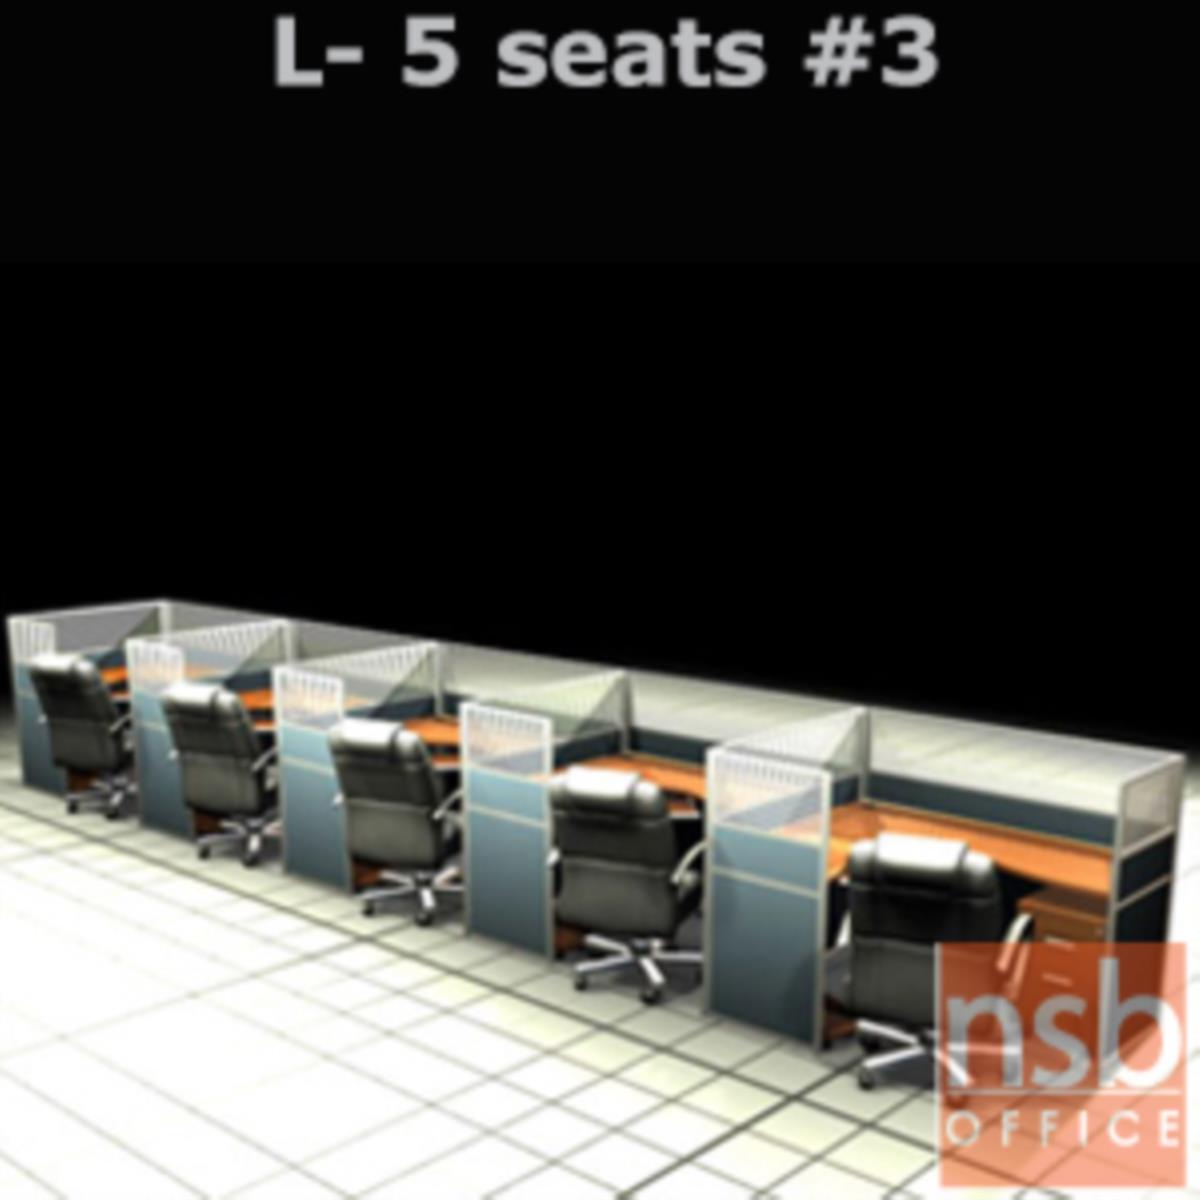 A04A116:ชุดโต๊ะทำงานกลุ่มตัวแอล 5 ที่นั่ง   ขนาดรวม 762W*124D cm. พร้อมพาร์ทิชั่นครึ่งกระจกขัดลาย